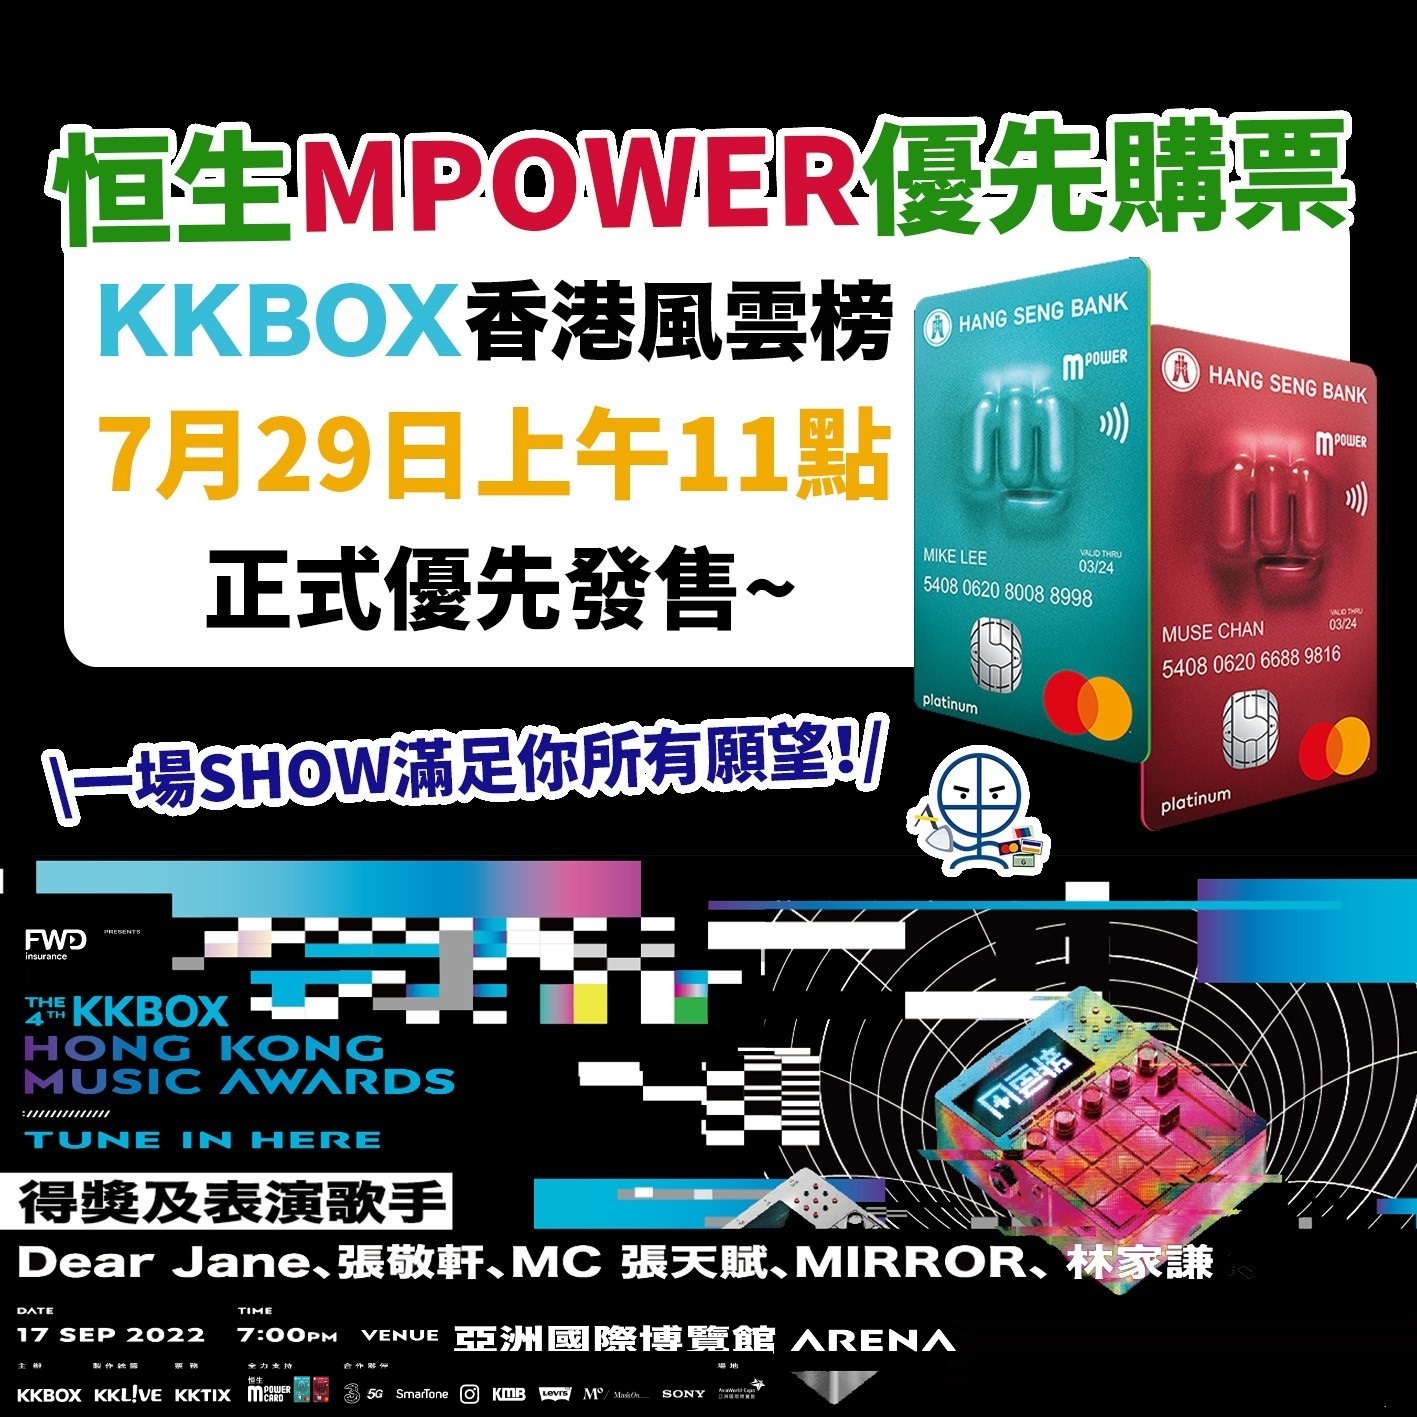 KKBOX-風雲榜-恒生-mpower-優先購票